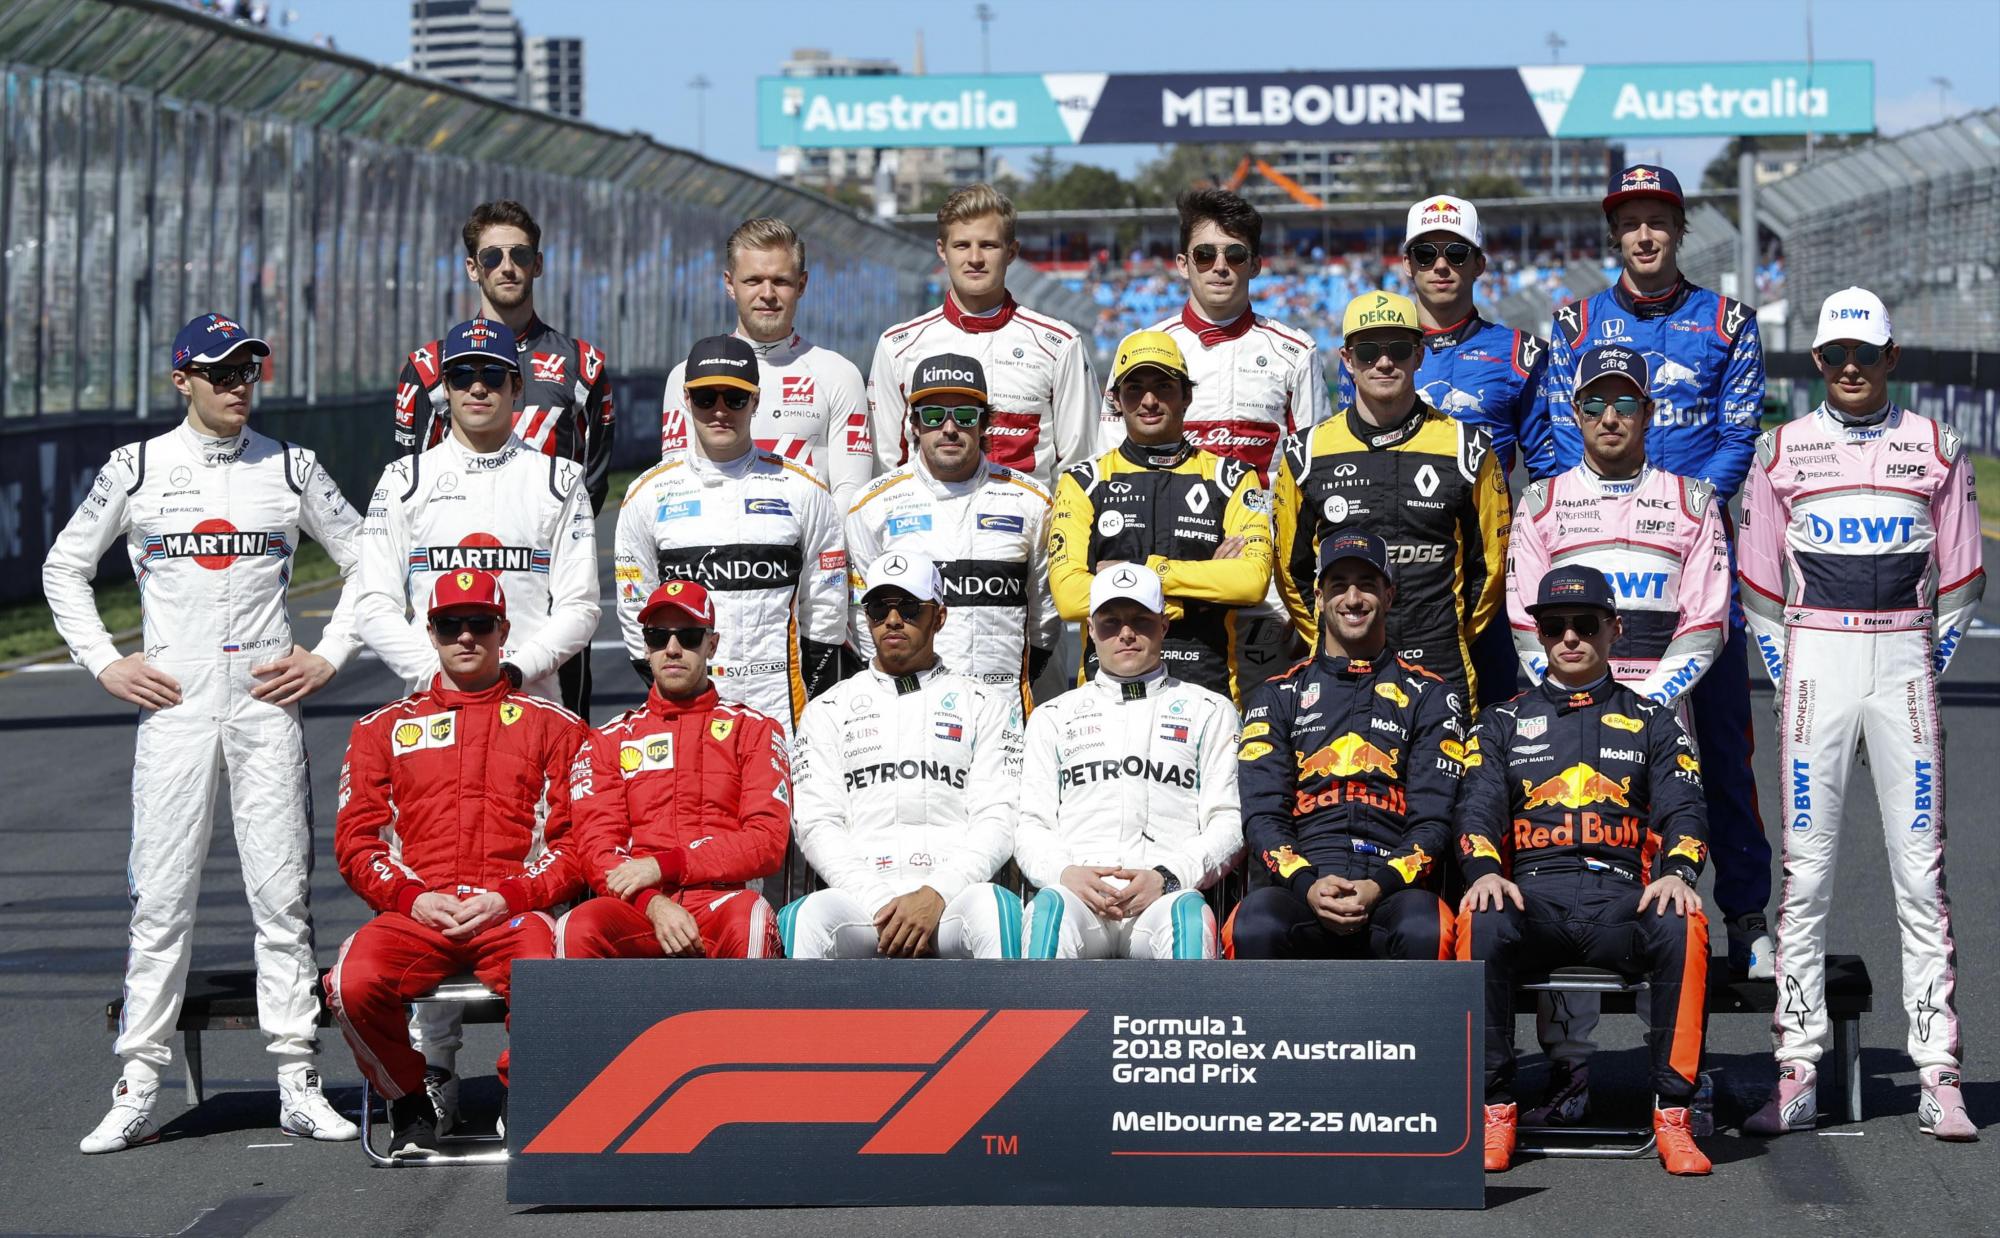 Los conductores posan para el retrato oficial de los pilotos de 2018 antes del Gran Premio de Fórmula Uno 2018 de Australia en el circuito Albert Park en Melbourne, Australia, el 25 de marzo de 2018.  